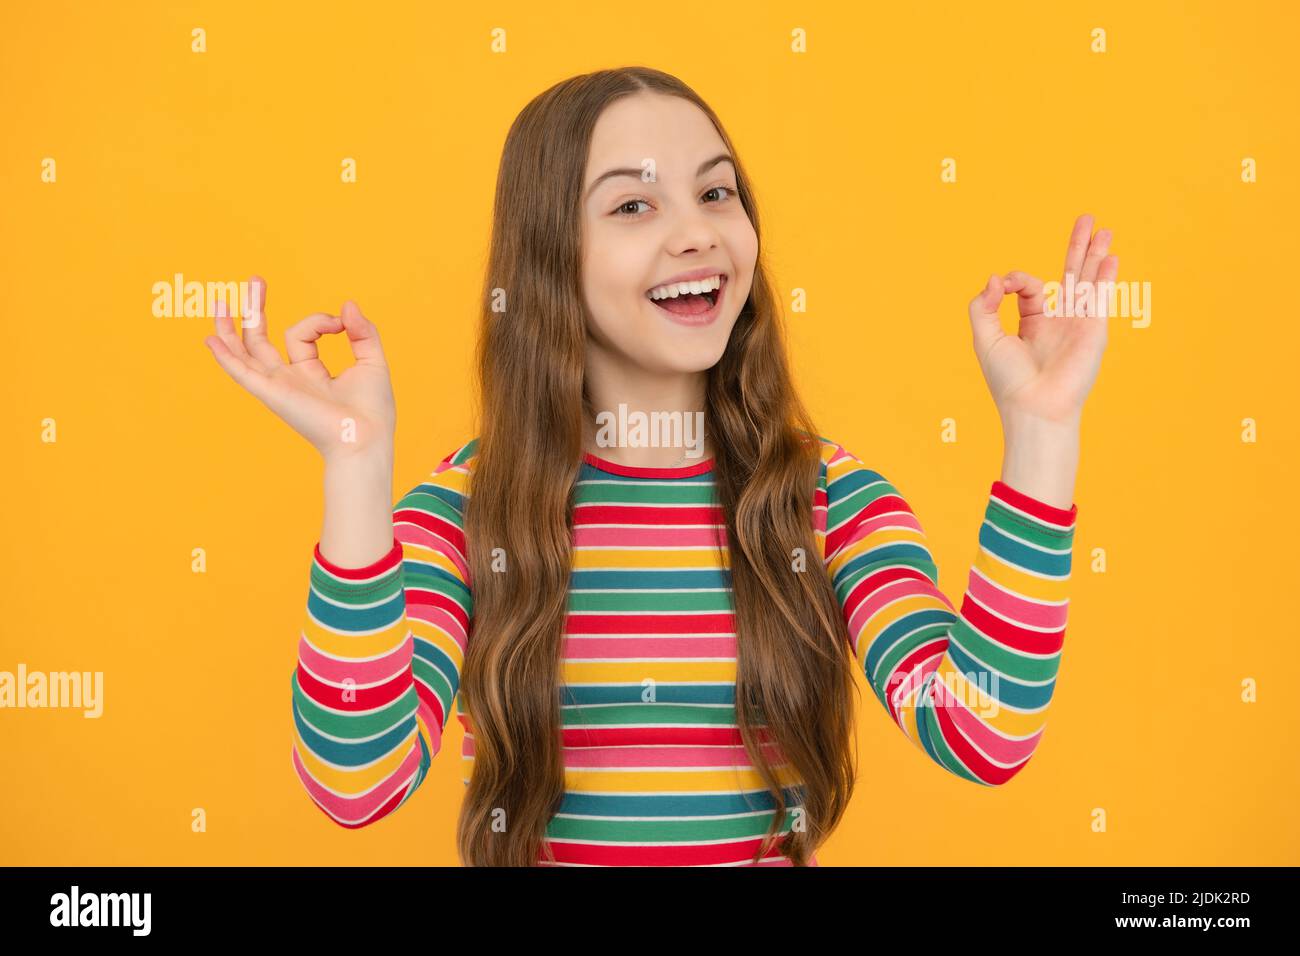 Jeune fille enfant montrer les doigts ok symbole langue signe isolé sur fond jaune. Drôle de visage d'adolescent. Banque D'Images